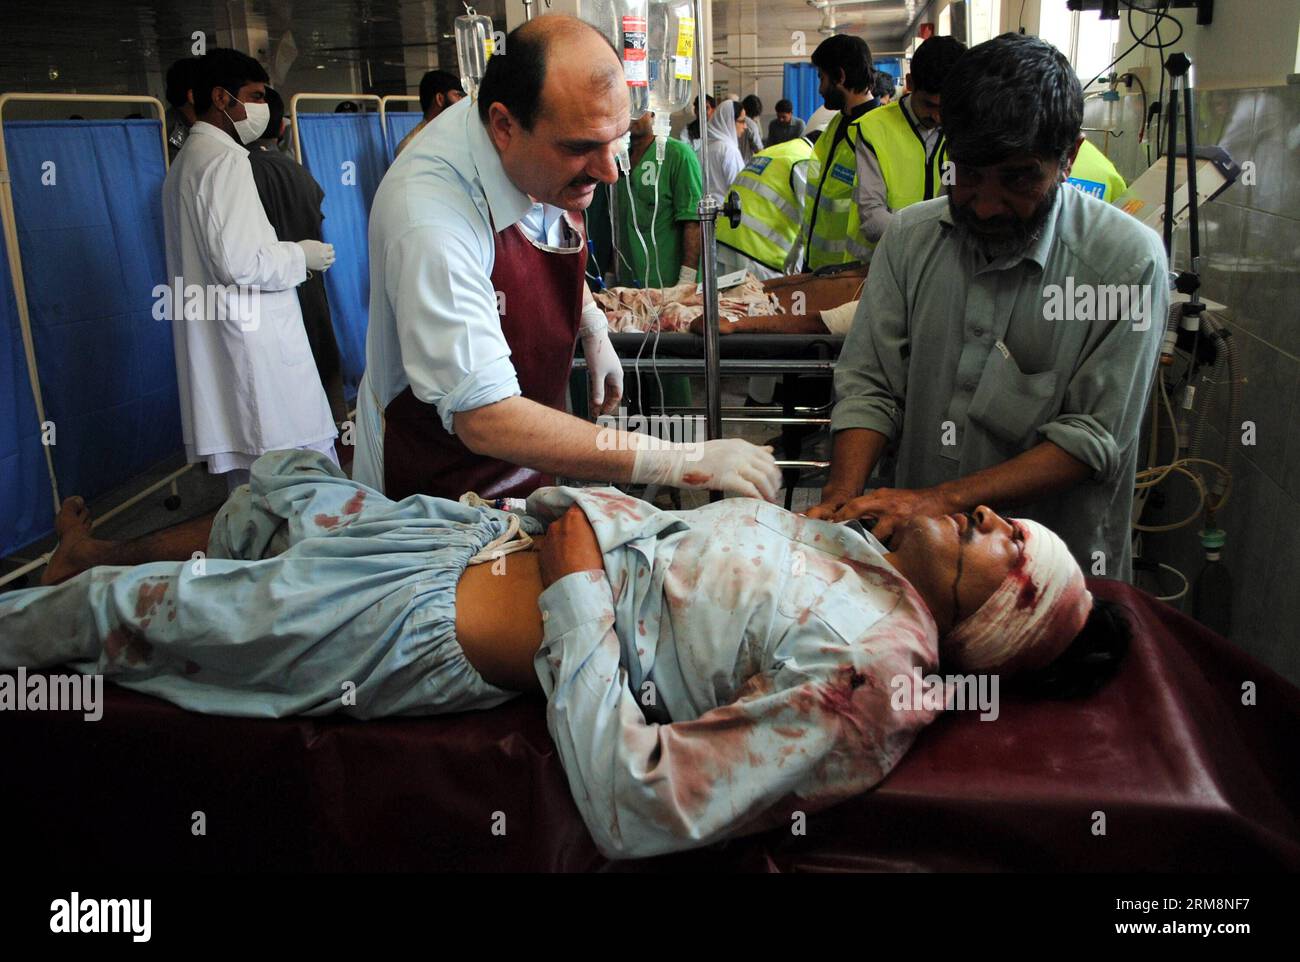 (140422) -- PESHAWAR, 22. April 2014 (Xinhua) -- ein verletzter Mann erhält medizinische Behandlung in einem Krankenhaus im nordwestlichen pakistanischen Peshawar am 22. April 2014. Mindestens vier Menschen wurden getötet und 33 weitere verletzt, als am Dienstagmorgen eine Bombe in der Nähe eines Polizeifahrzeugs im nordwestlichen Charsadda-Bezirk in Pakistan explodierte, berichteten lokale Medien. (Xinhua/Umar Qayyjm) PAKISTAN-CHARSADDA-BLAST PUBLICATIONxNOTxINxCHN Peshawar 22. April 2014 XINHUA to Compled man erhält medizinische Behandlung IN einem Krankenhaus im Nordwesten Pakistans S Peshawar AM 22. April 2014 wurden mindestens vier Prominente GETÖTET und 33 weitere I Stockfoto